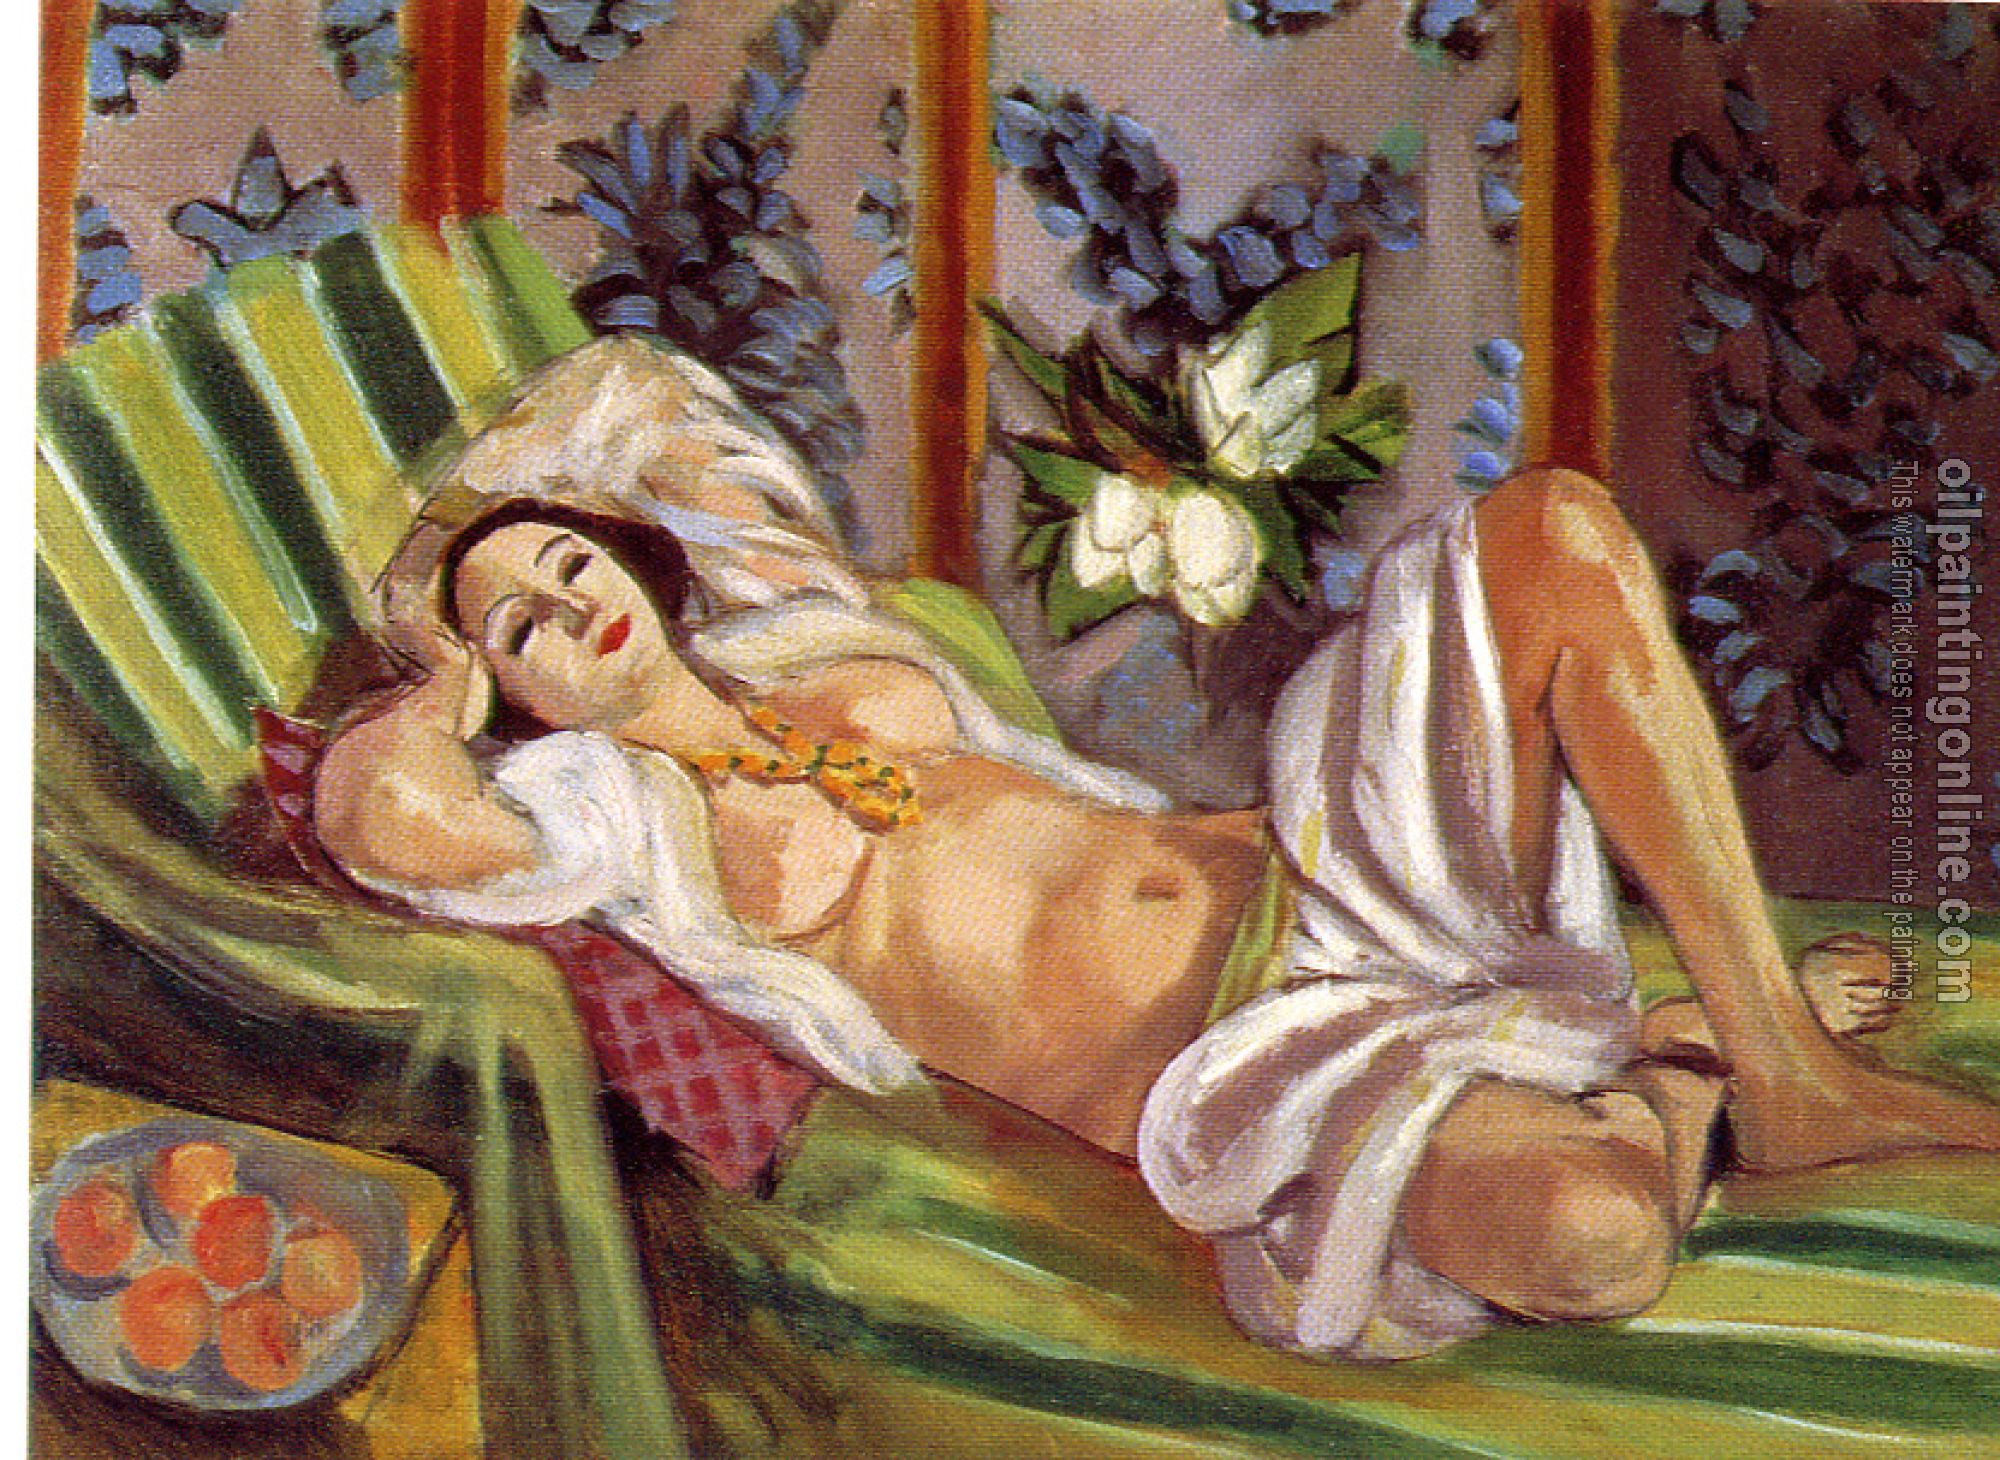 Matisse, Henri Emile Benoit - odalisque with magnolias